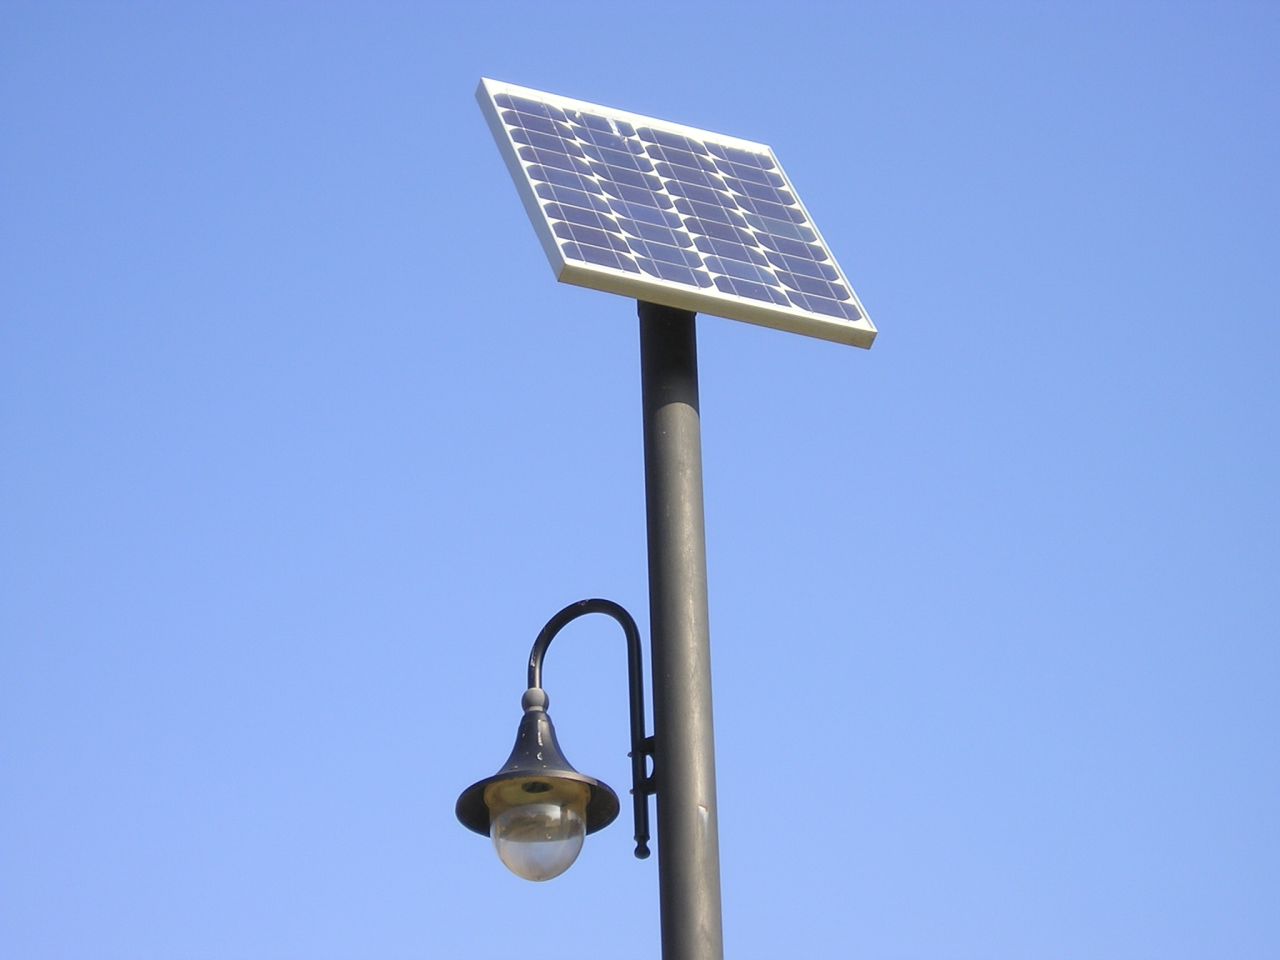 Уличный светильник на солнечной энергии. Фото: Sunandclimate.com